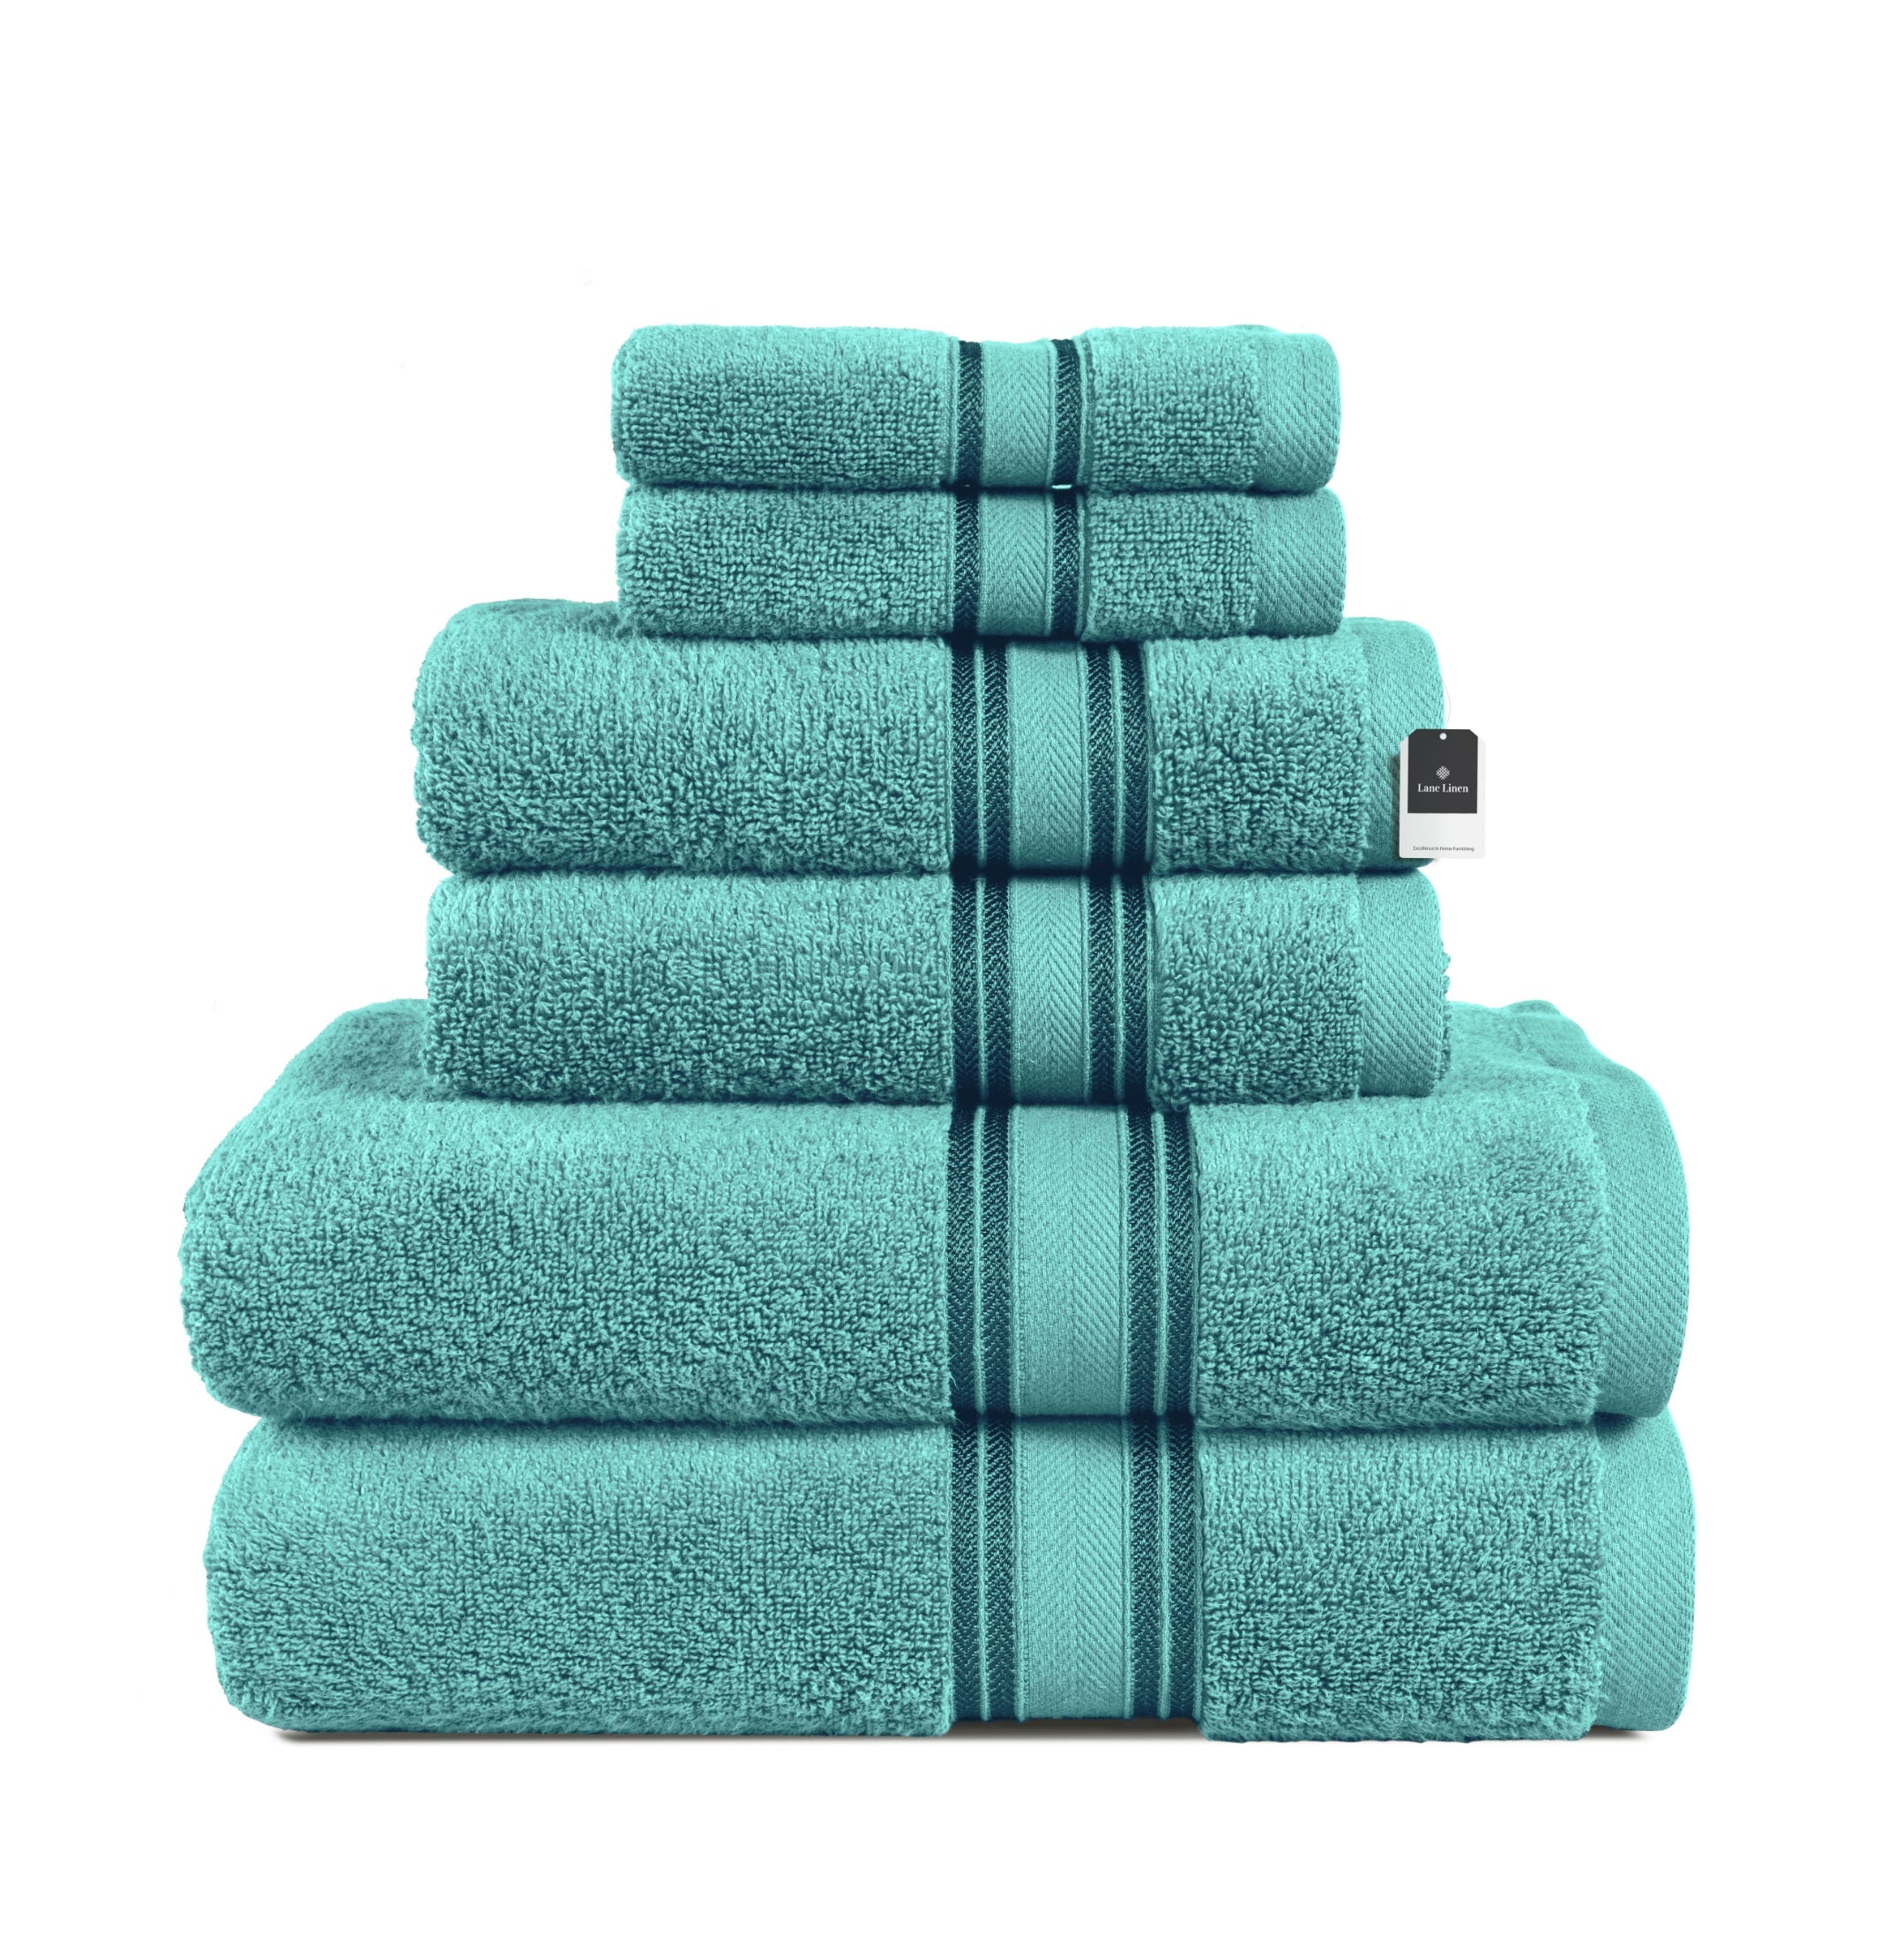 6 Piece Cotton Towel Set 550GSM - Teal